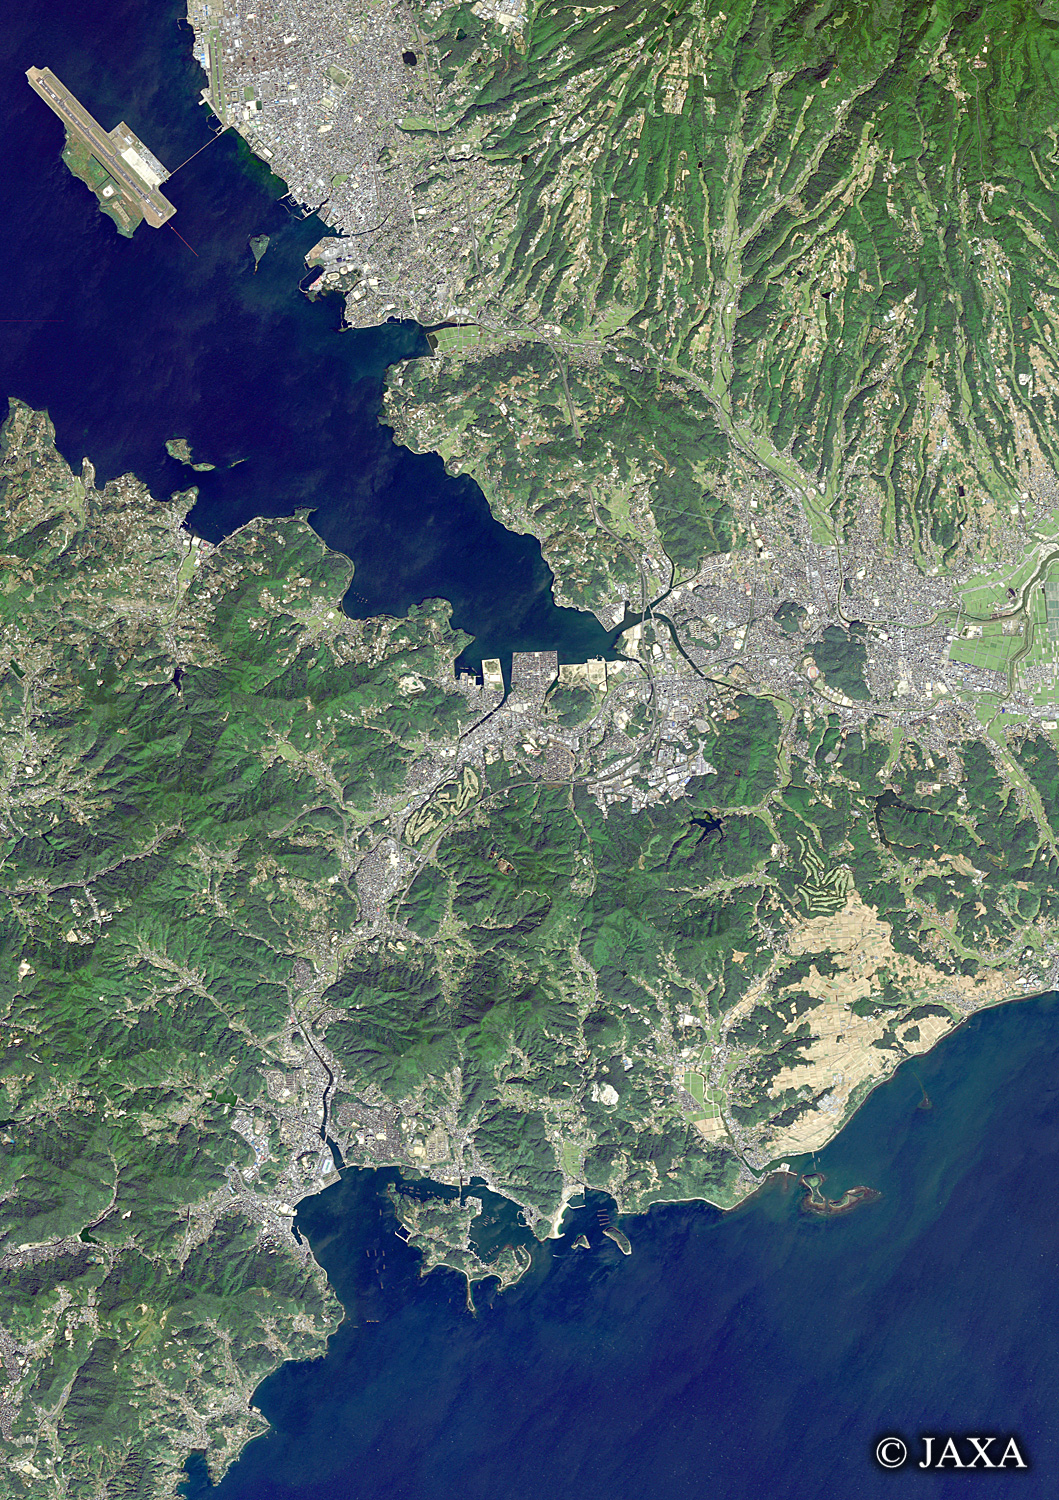 だいちから見た日本の都市 諫早市周辺:衛星画像